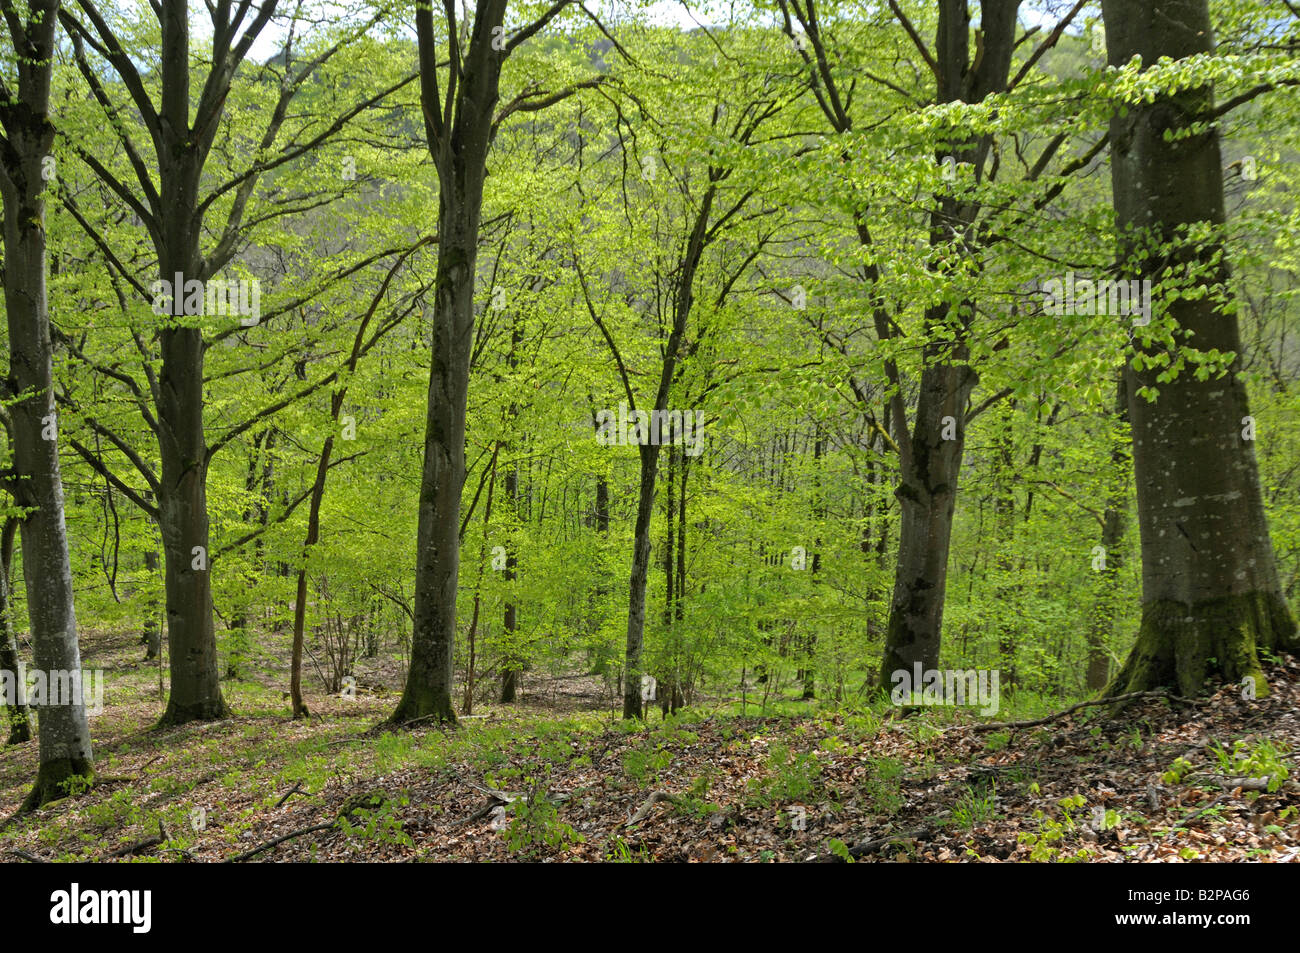 Common Beech, European Beech (Fagus sylvatica), forest in spring Stock Photo